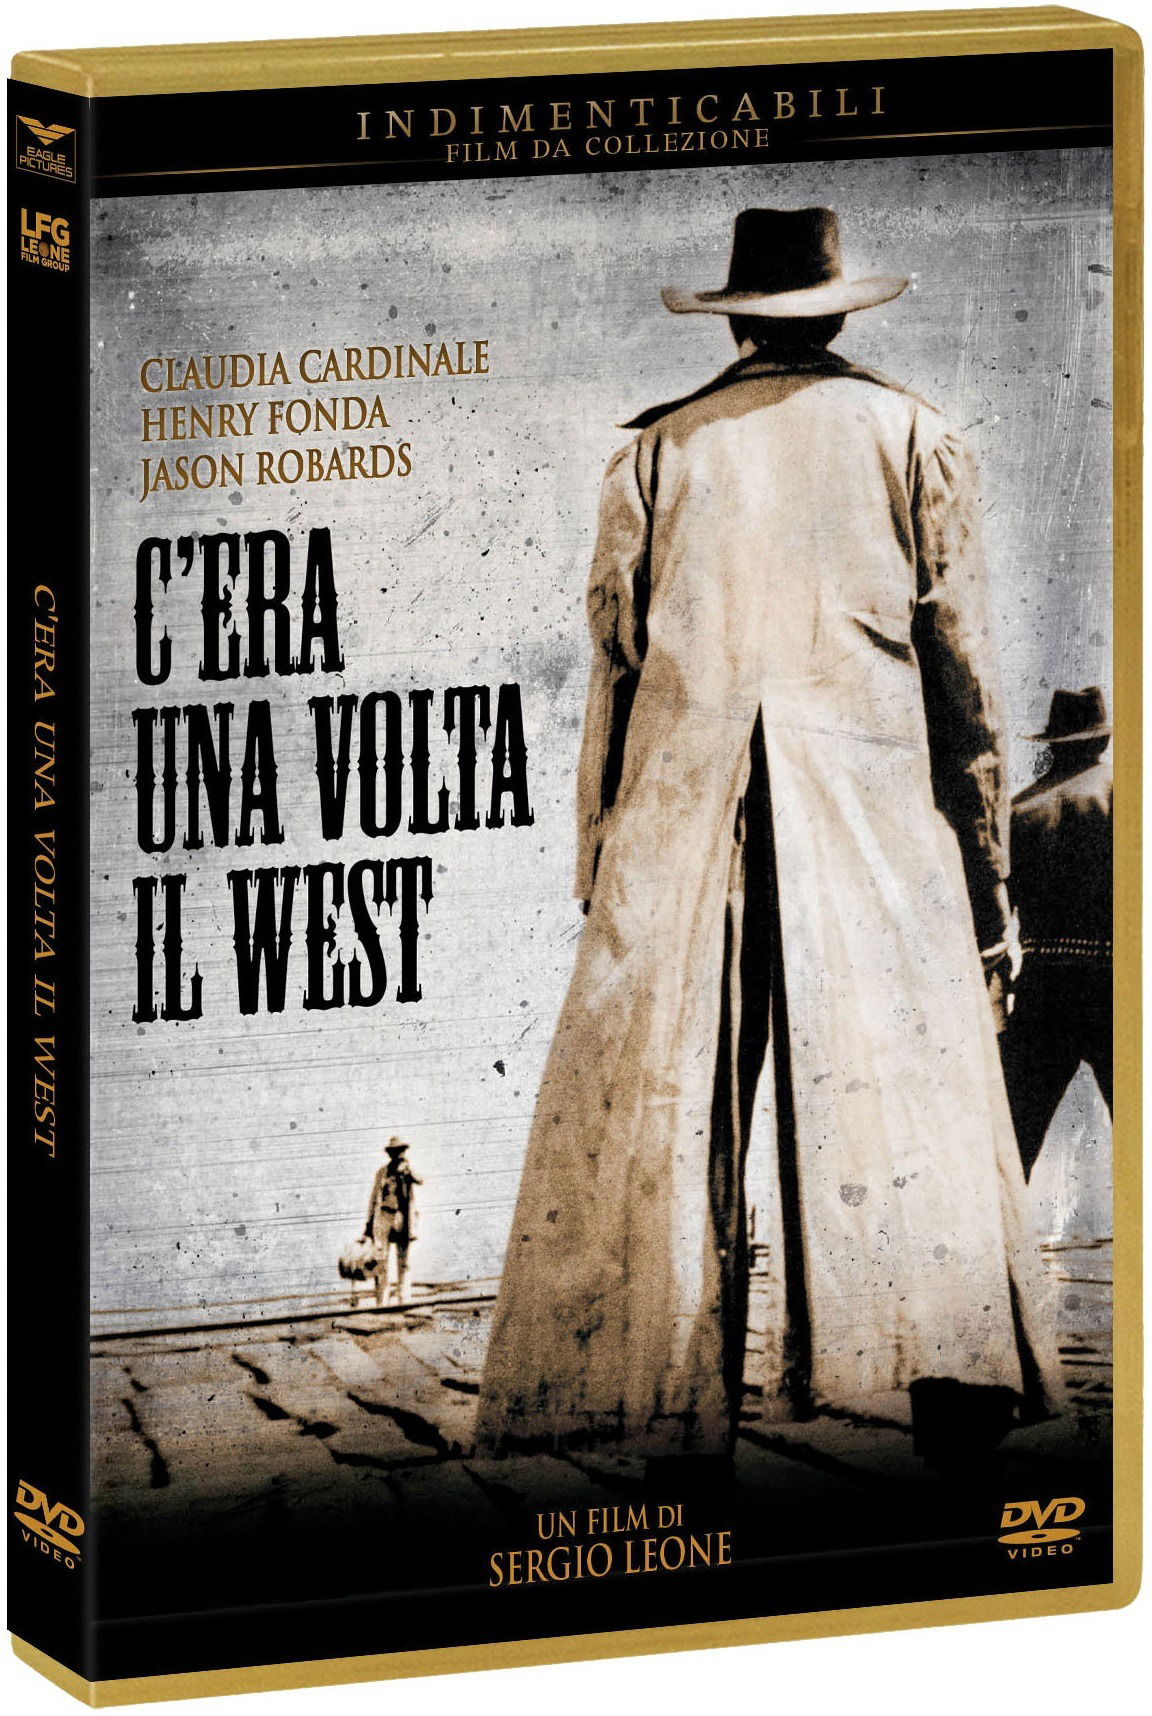 C’ERAUNAVOLTA IL WEST[DVD]